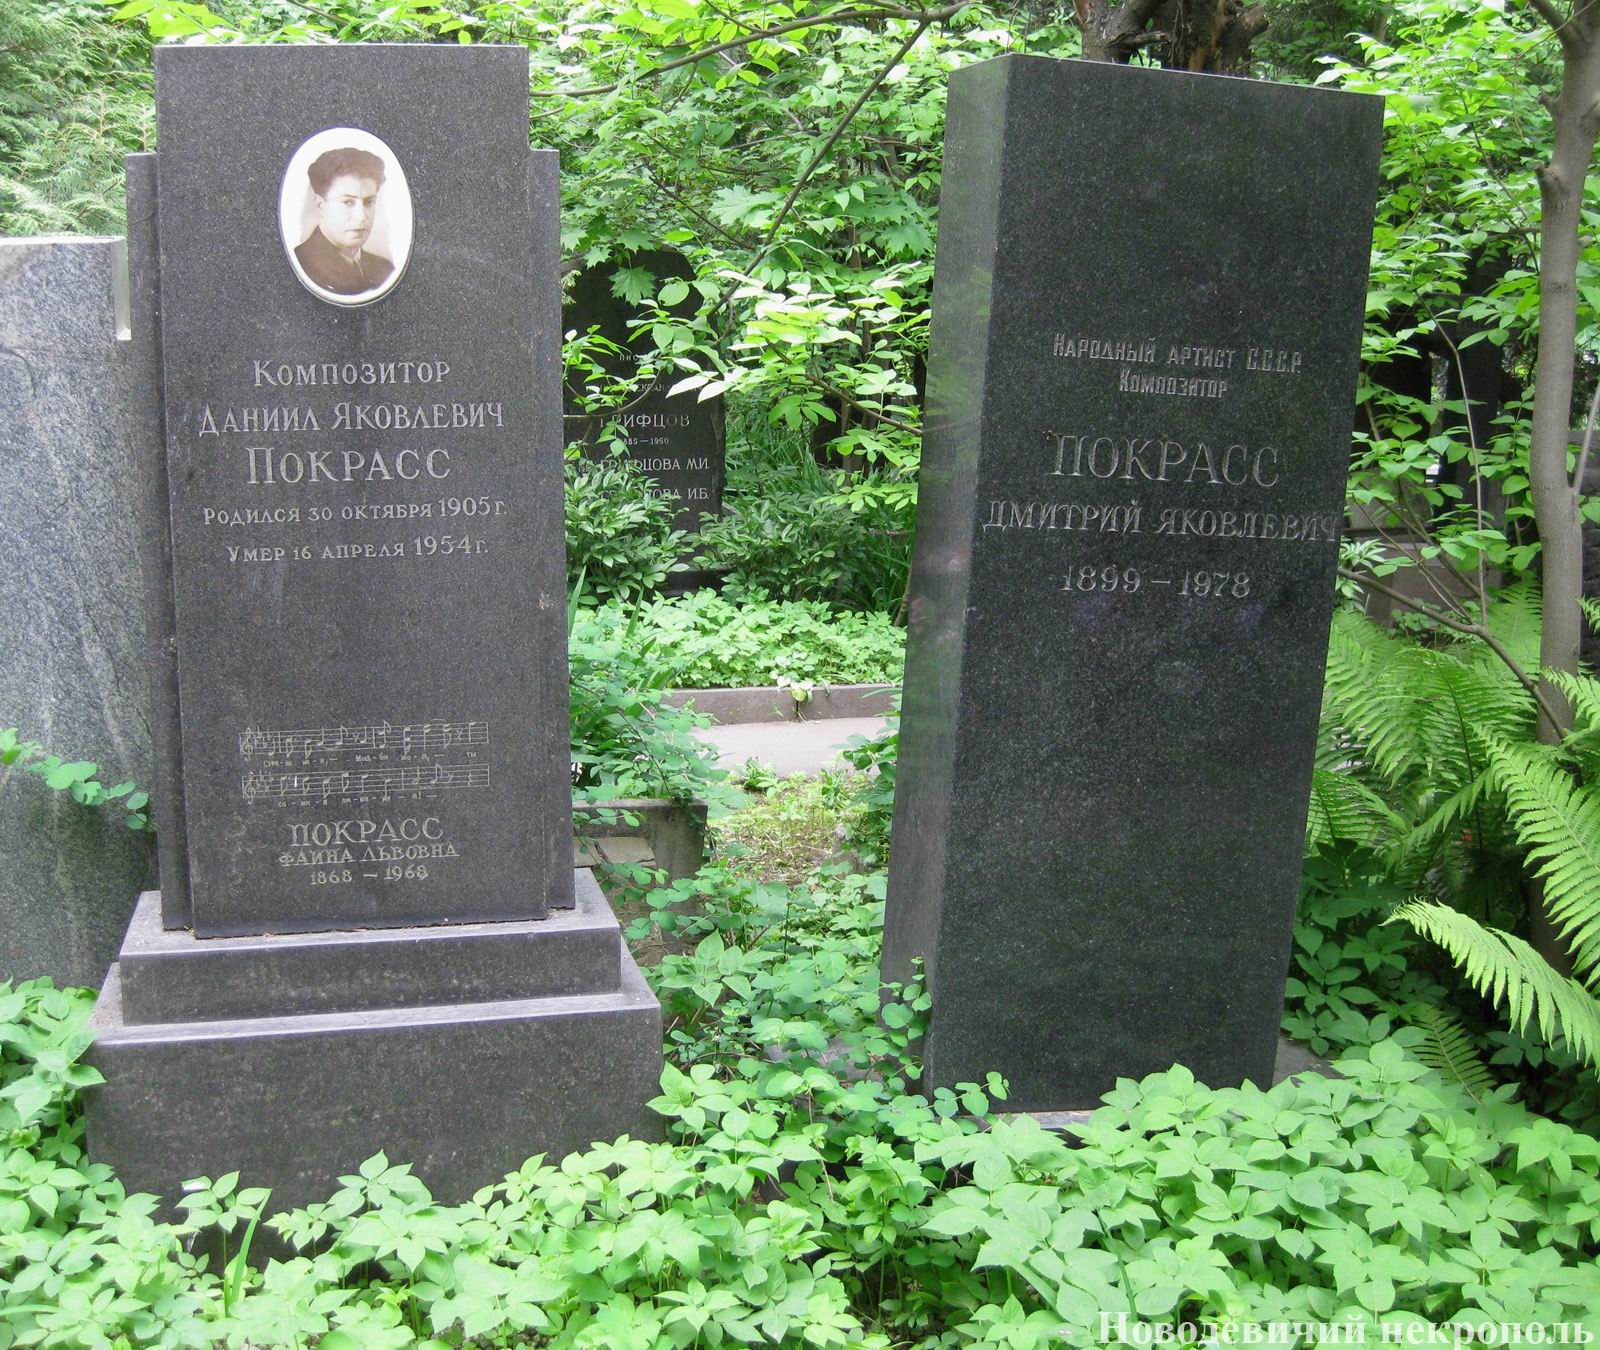 Памятник на могиле Покрасс Дан.Я. (1905–1954) и Дм.Я. (1899–1978), на Новодевичьем кладбище (4–40–9). Нажмите левую кнопку мыши, чтобы увидеть фрагмент памятника.